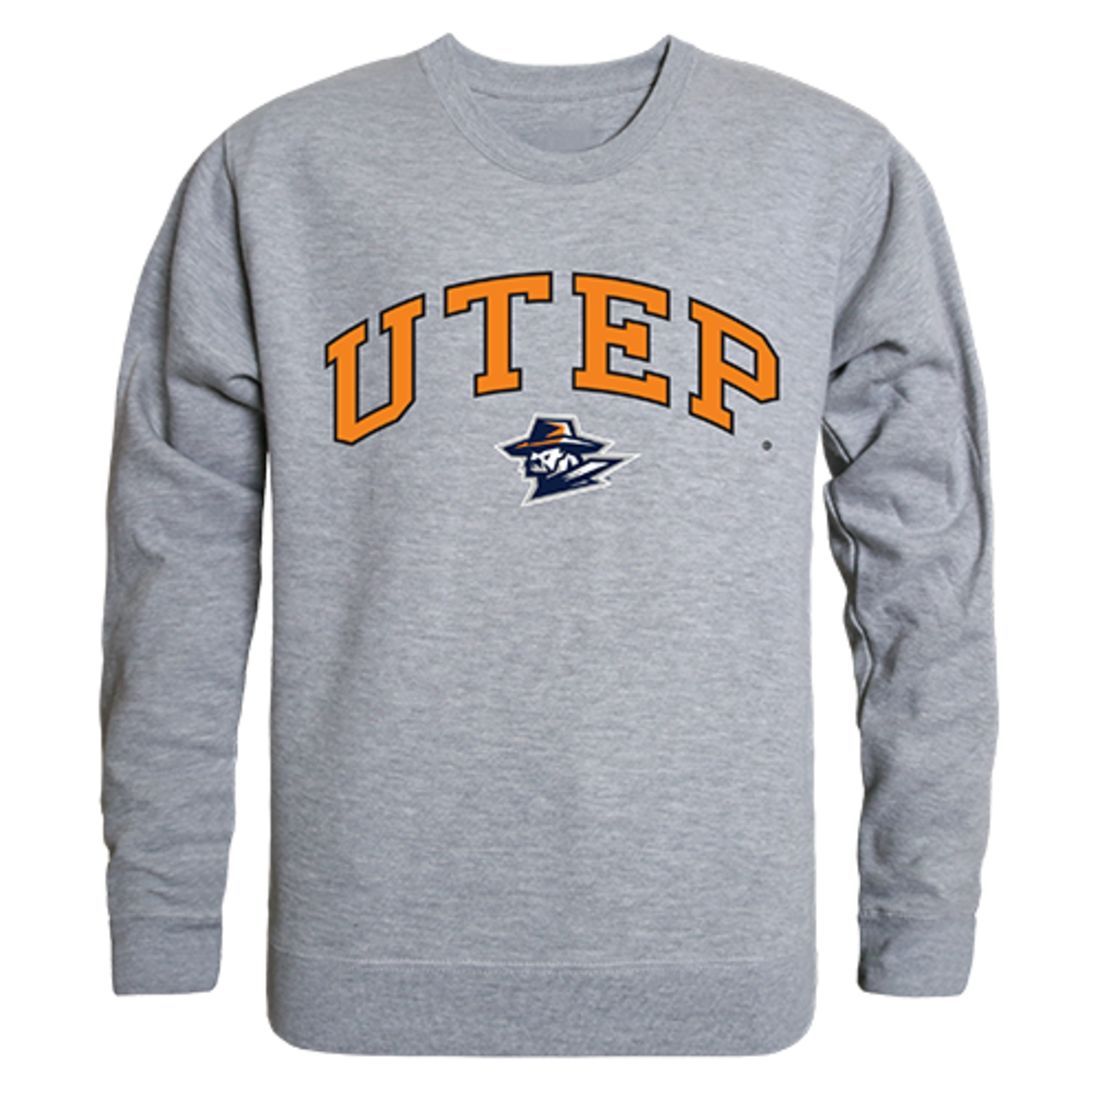 UTEP University of Texas at El Paso Campus Crewneck Pullover Sweatshirt Sweater Heather Grey-Campus-Wardrobe